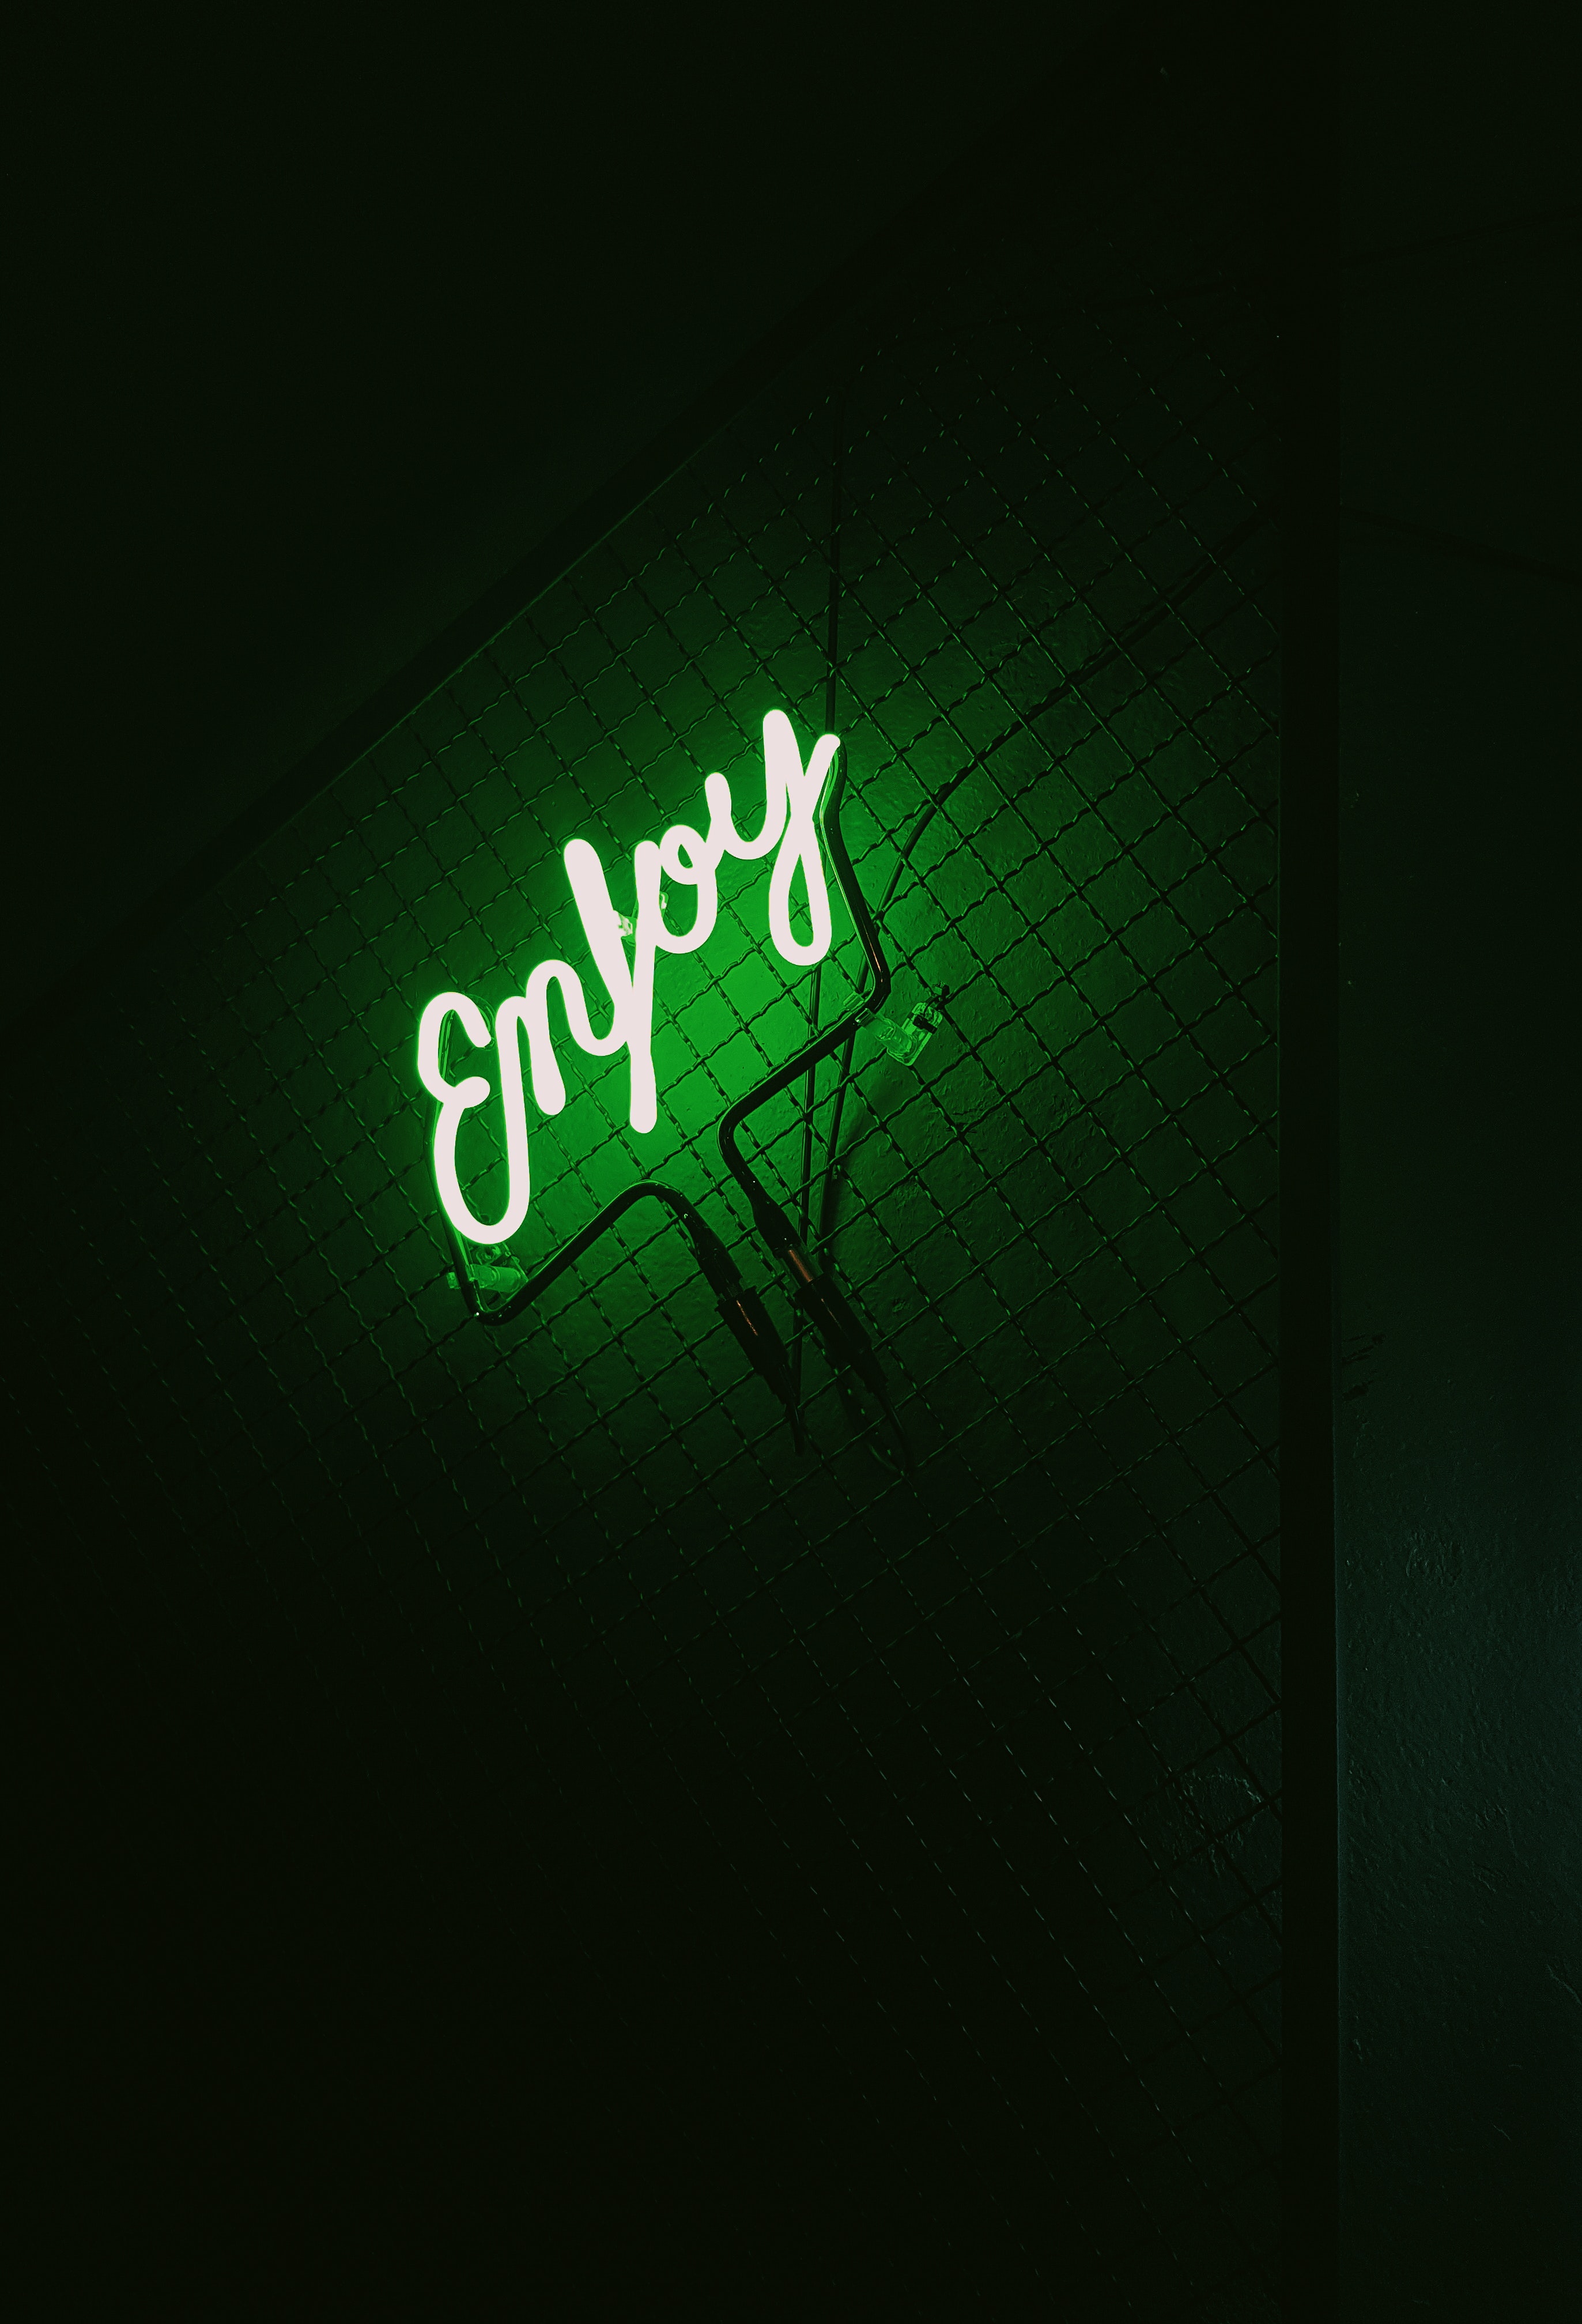 backlight, words, dark, neon, green, illumination, inscription 8K